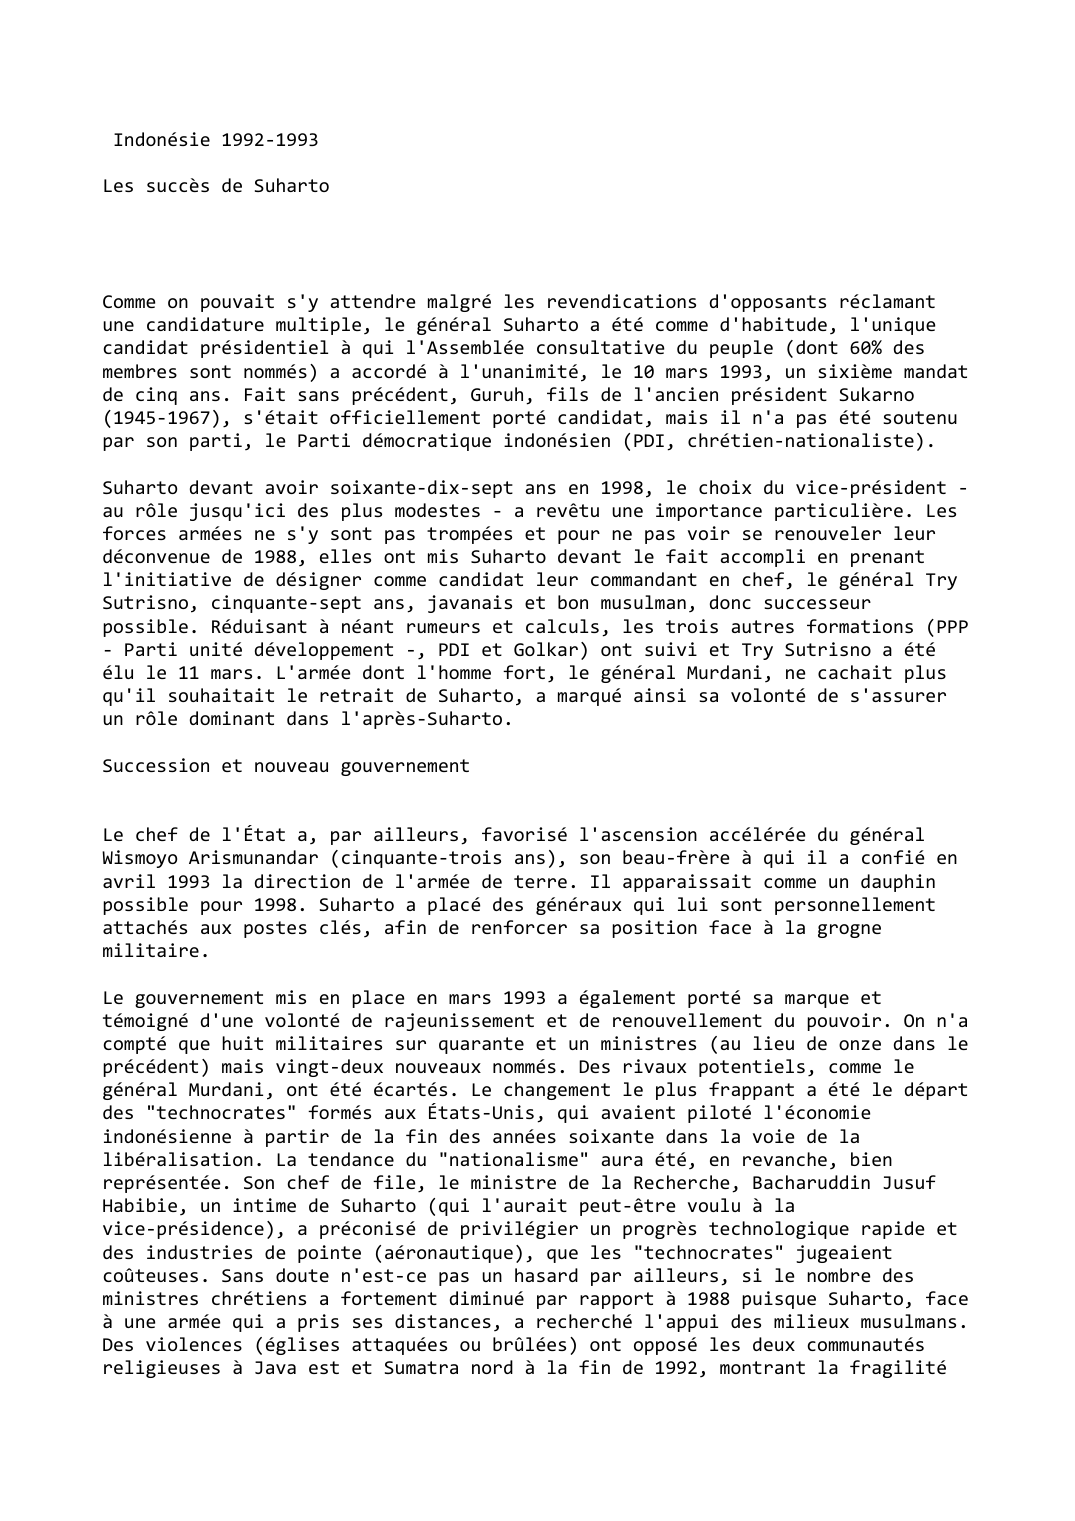 Prévisualisation du document Indonésie 1992-1993

Les succès de Suharto